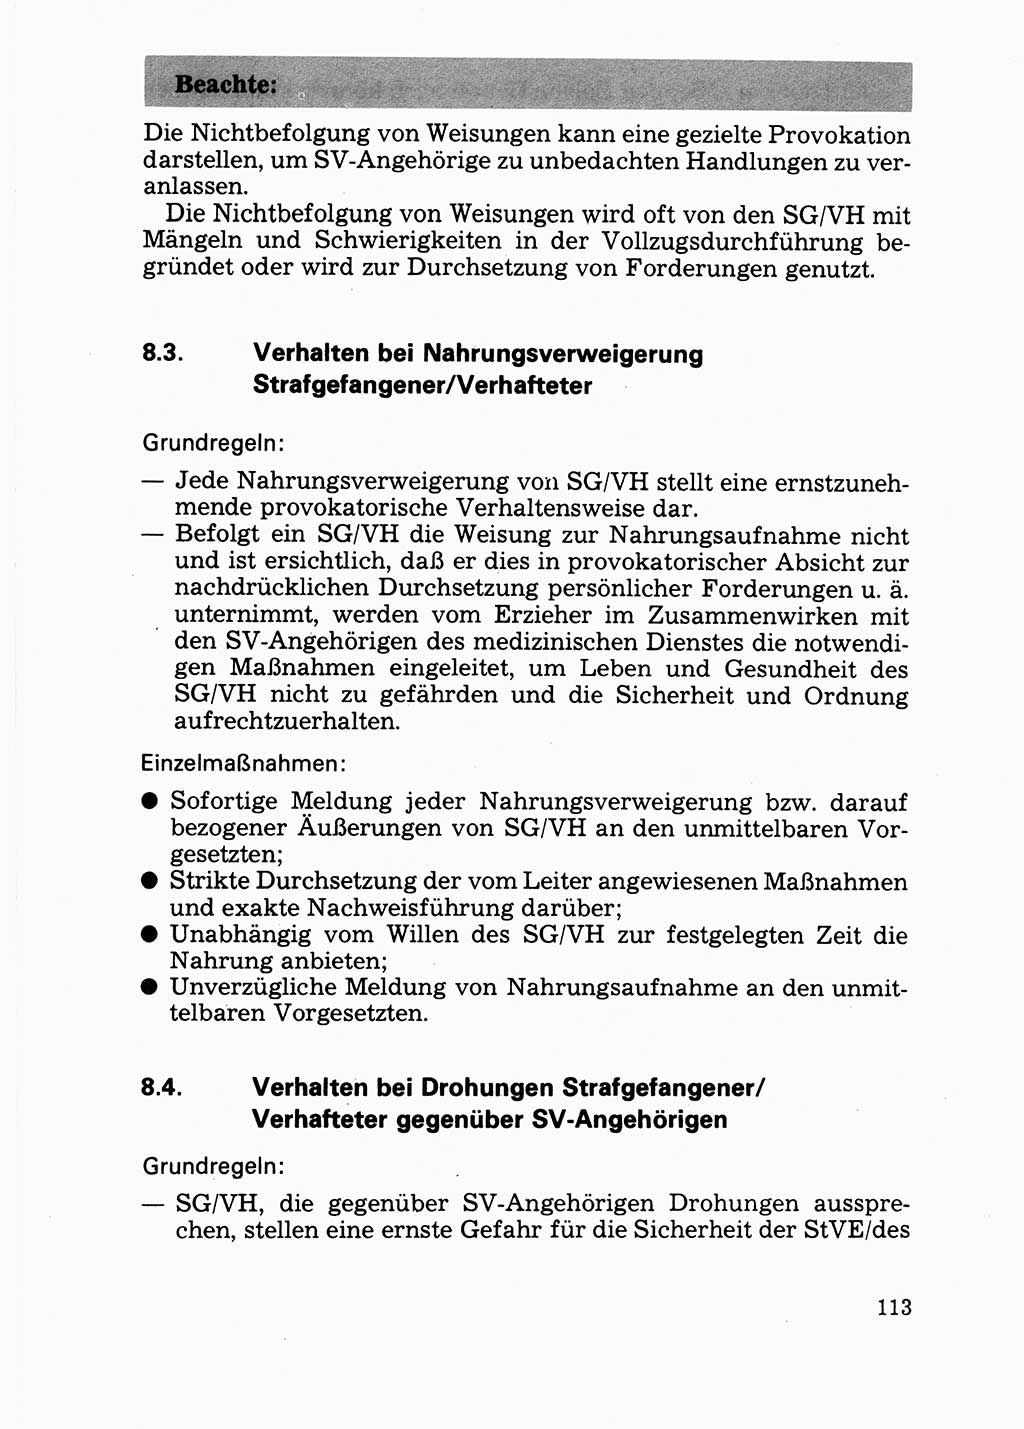 Handbuch für operative Dienste, Abteilung Strafvollzug (SV) [Ministerium des Innern (MdI) Deutsche Demokratische Republik (DDR)] 1981, Seite 113 (Hb. op. D. Abt. SV MdI DDR 1981, S. 113)